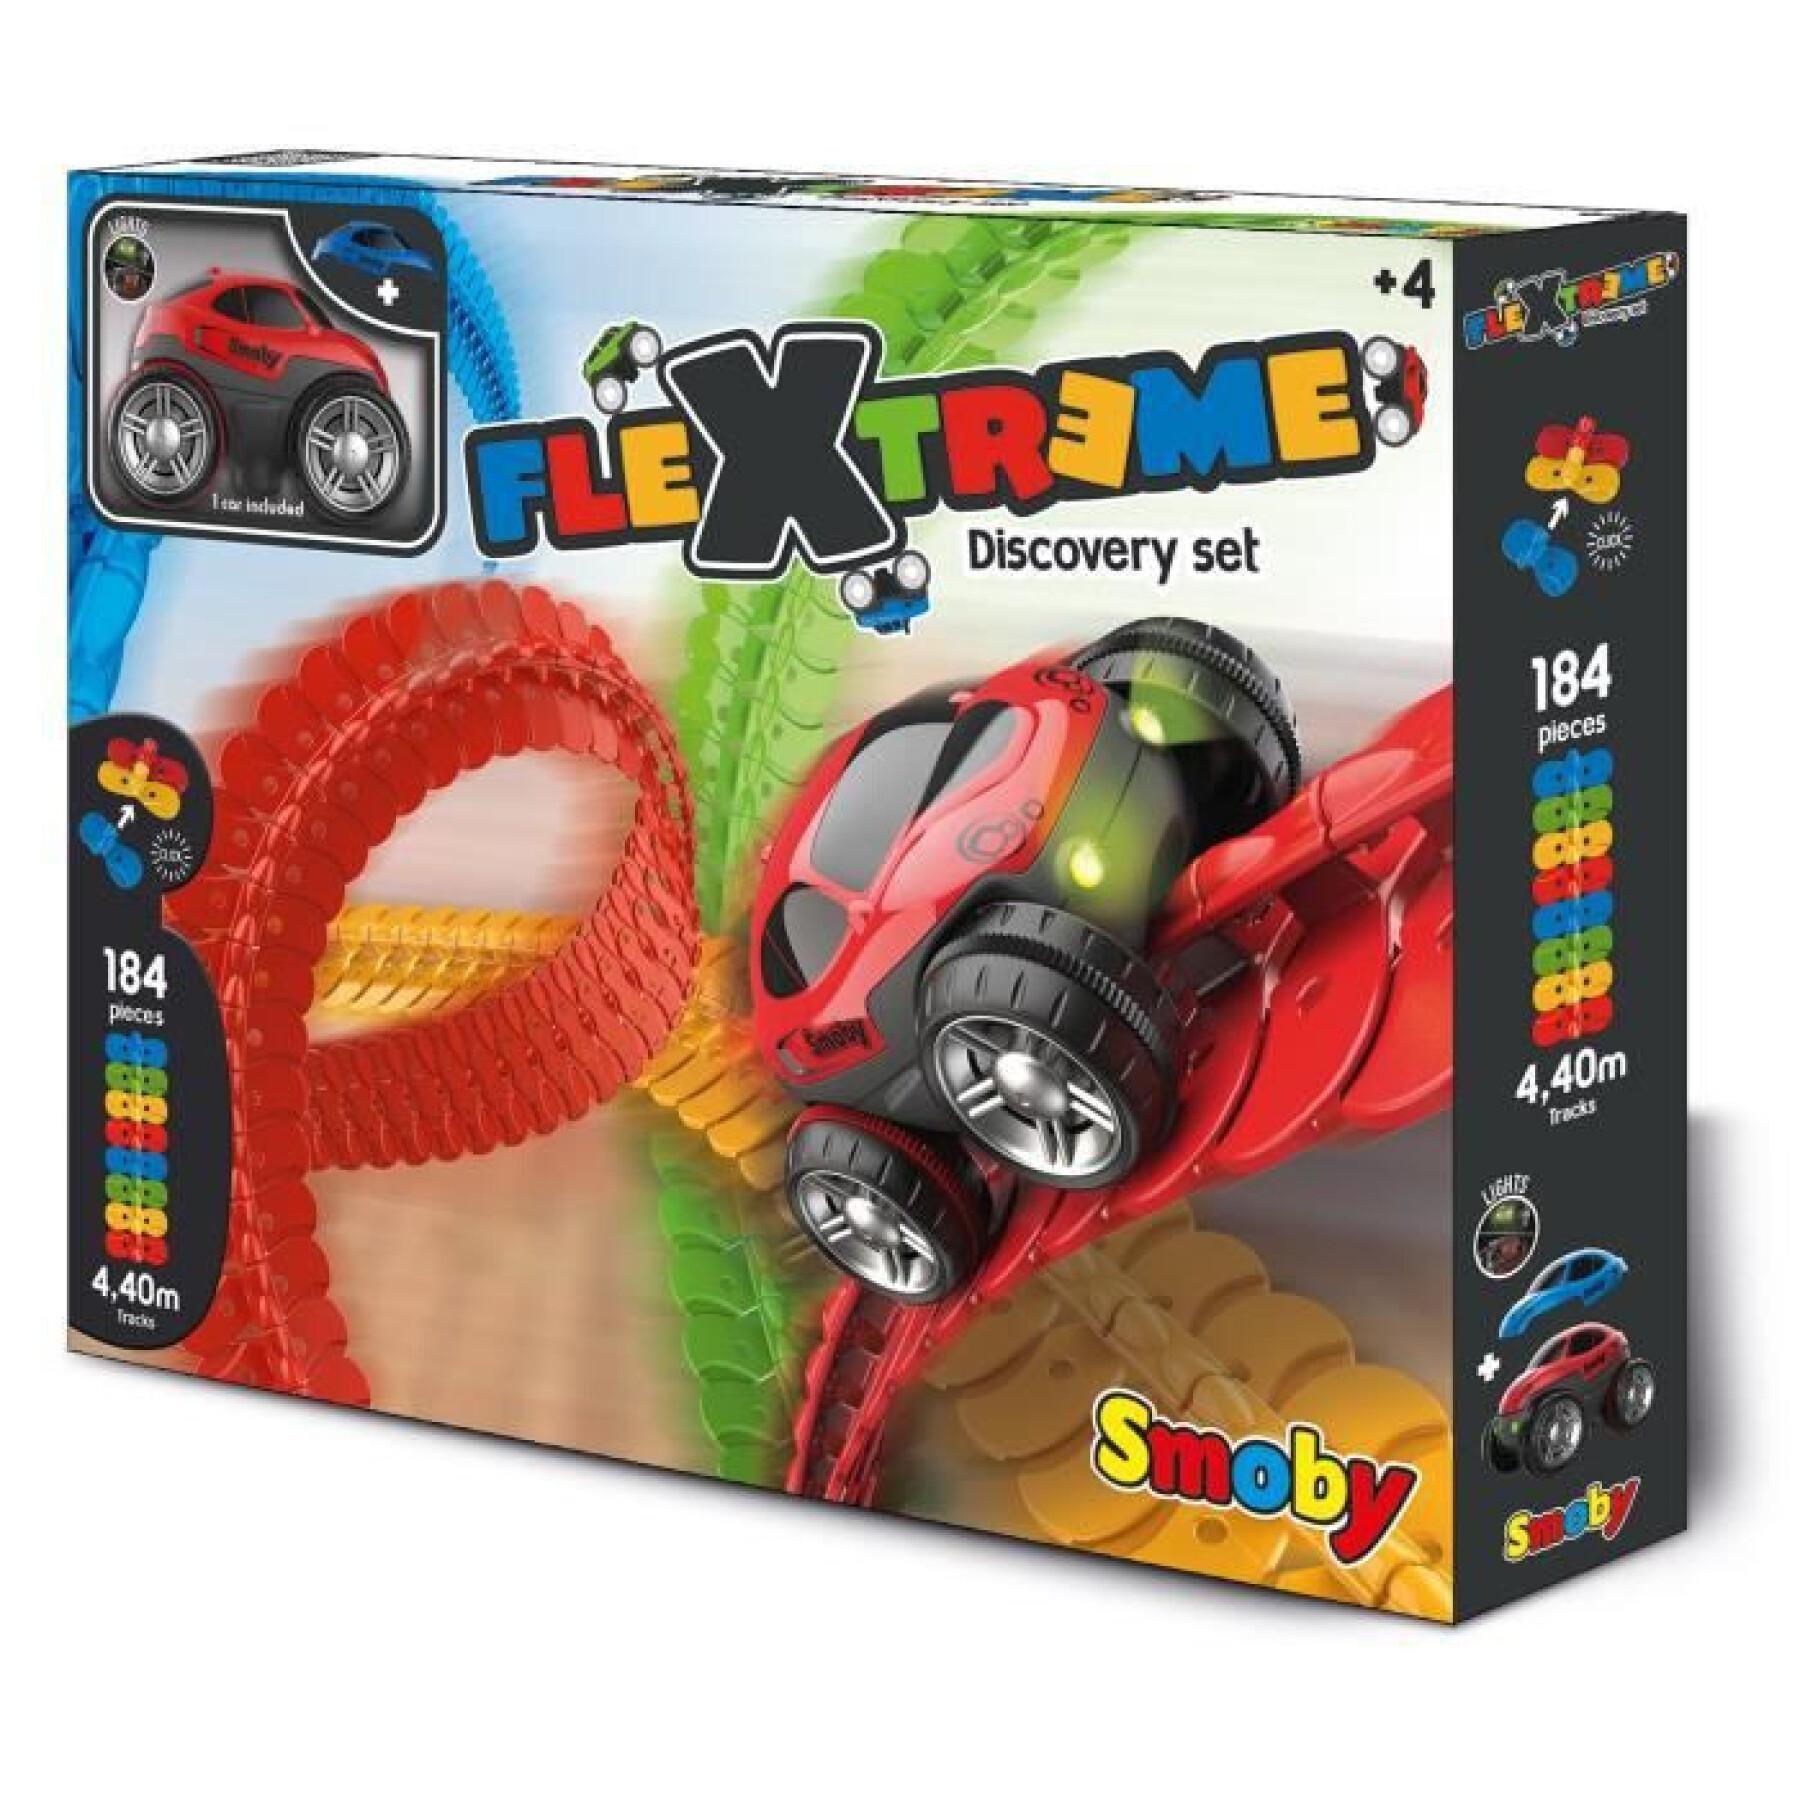 Conjunto de jogos de carros flextreme discovery Smoby